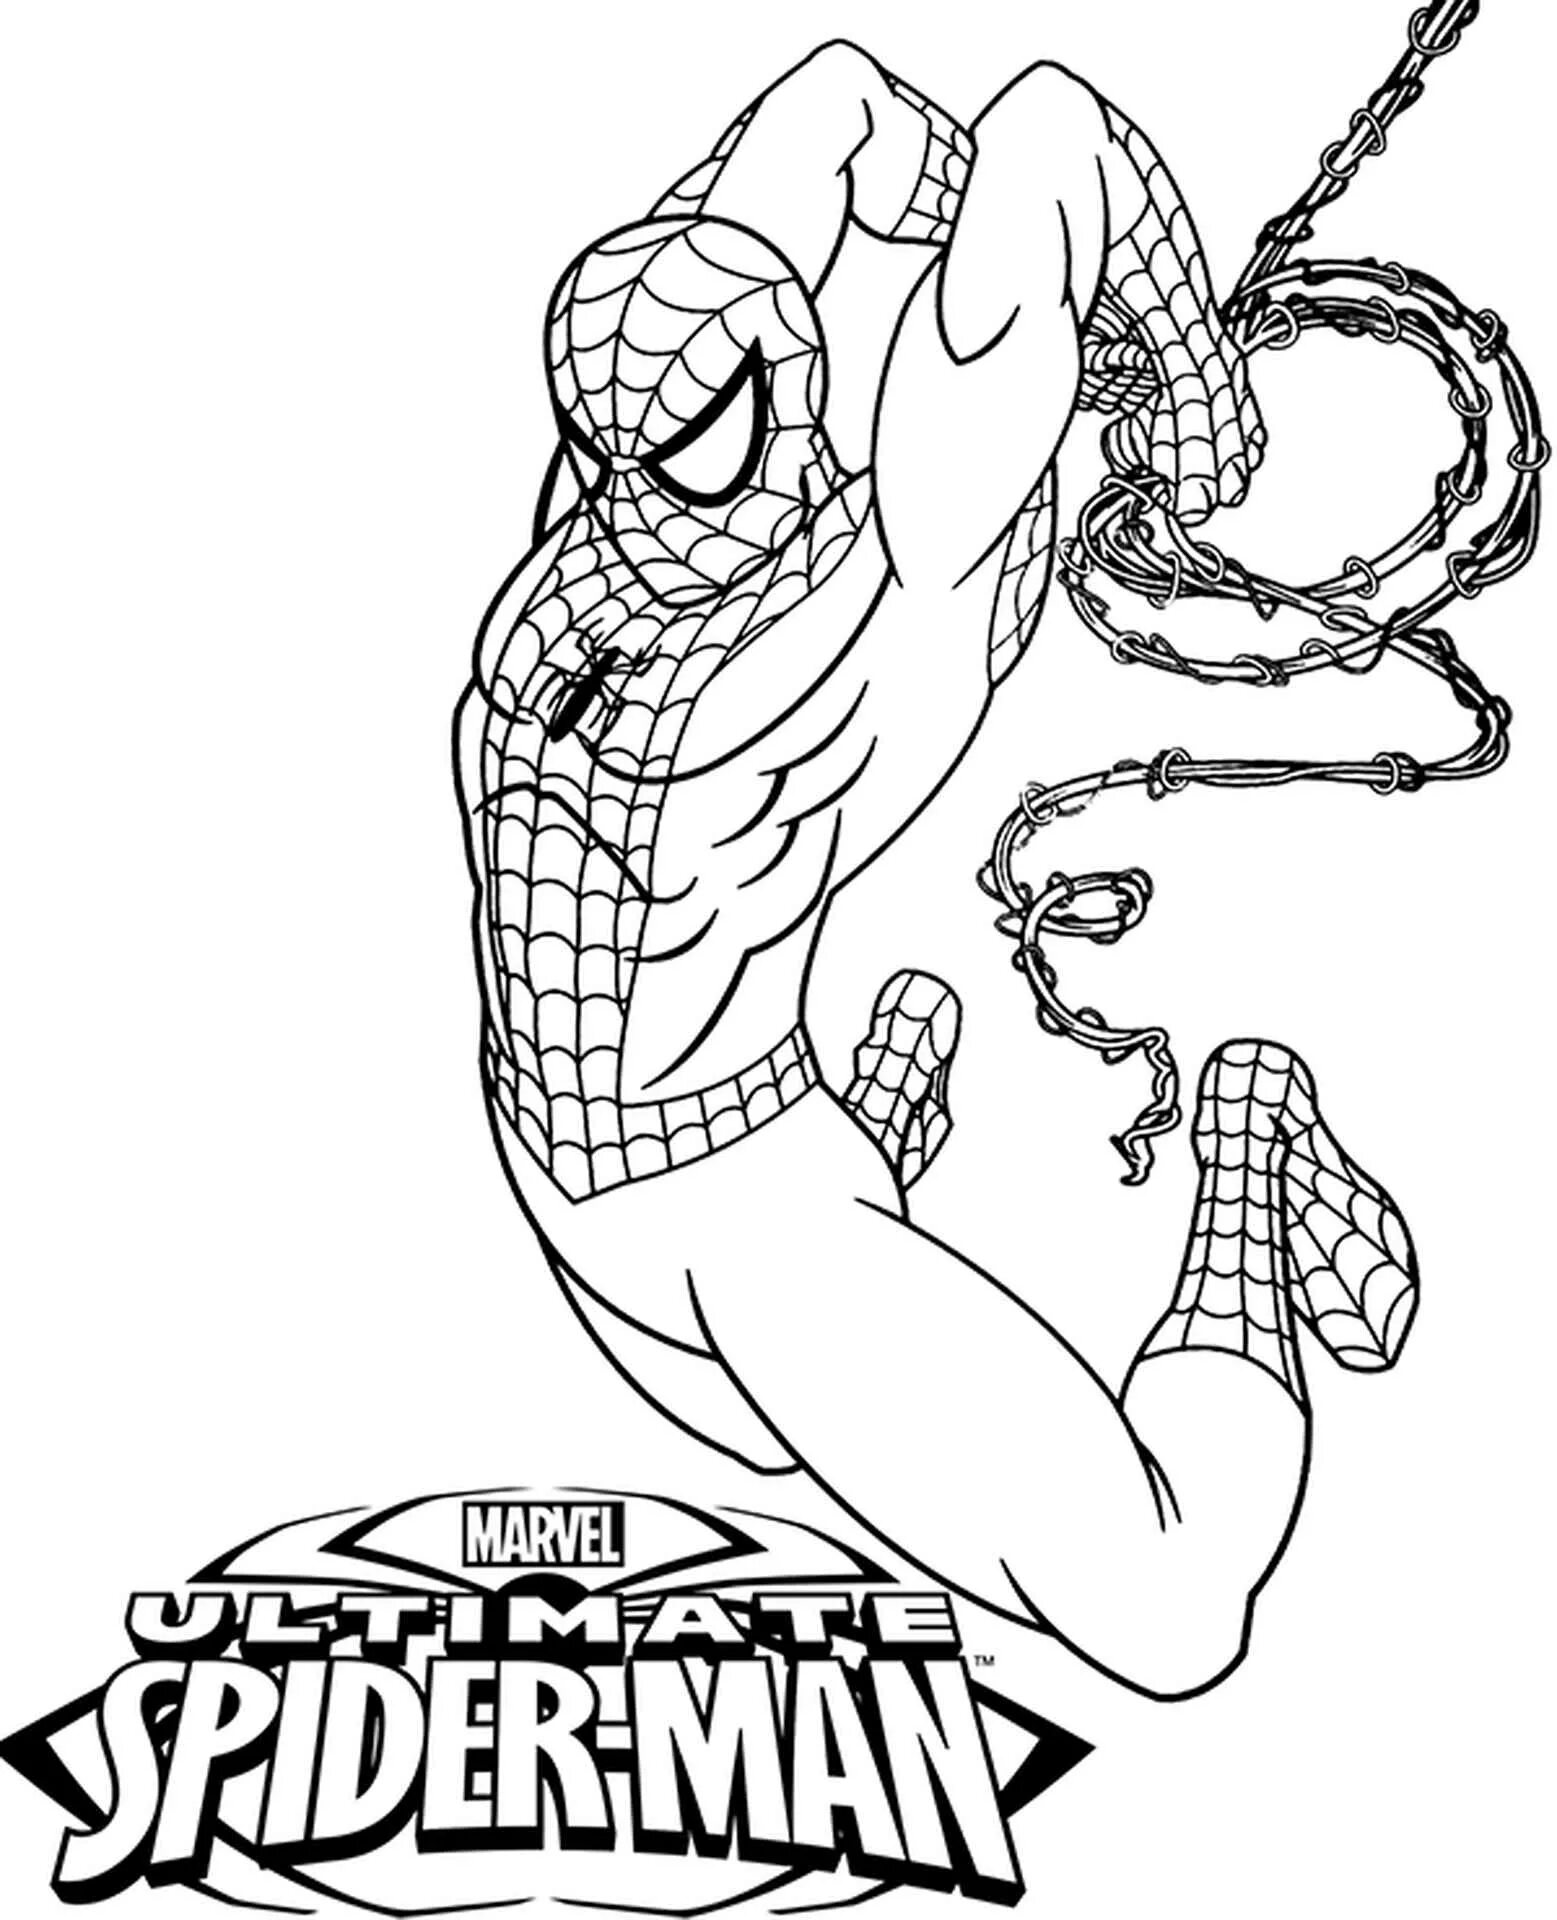 Spiderman team #1